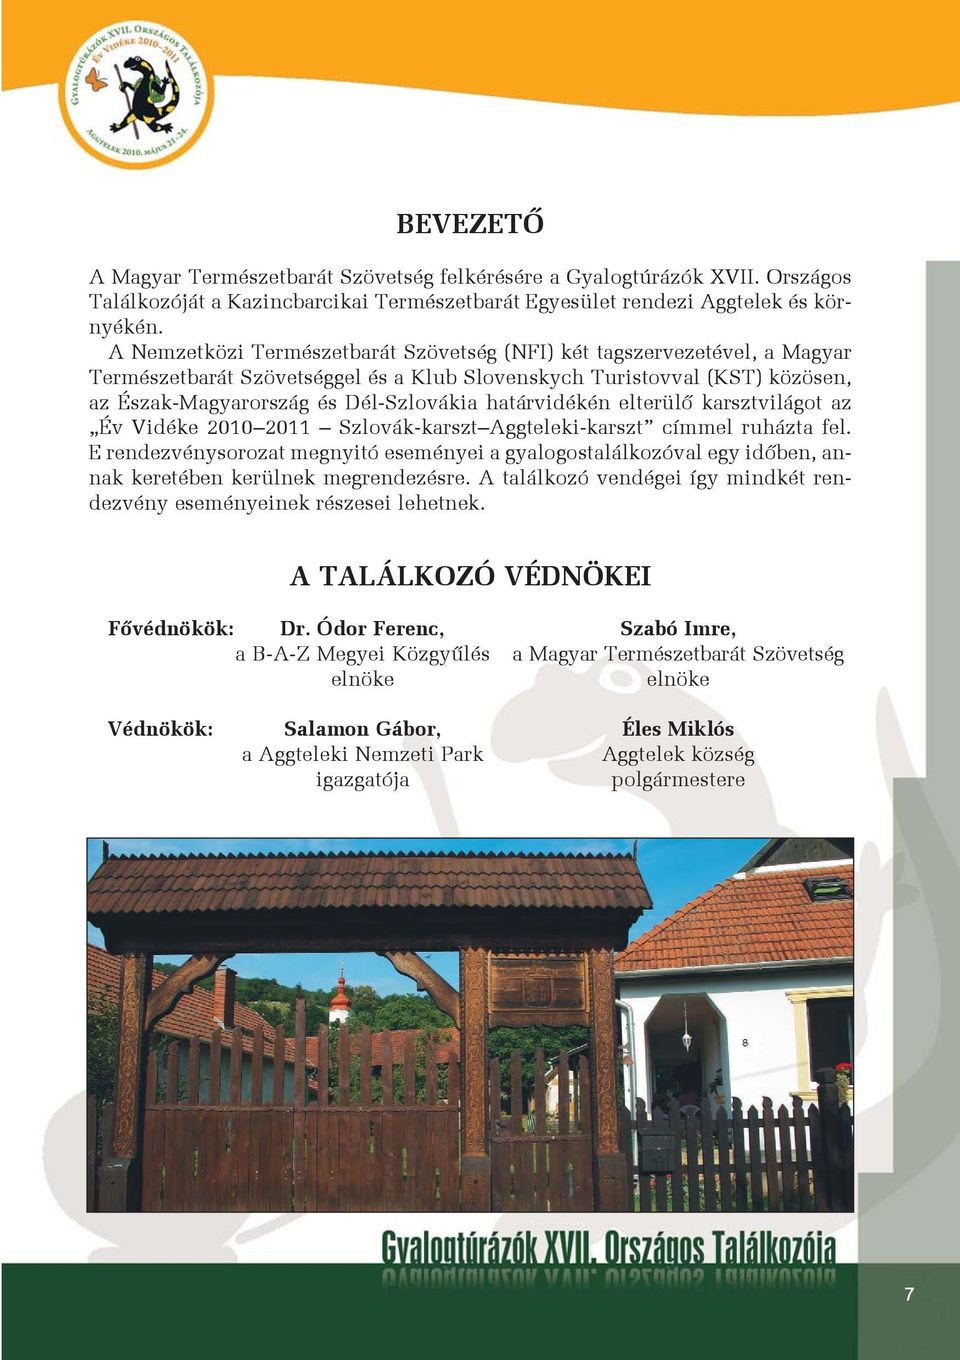 határvidékén elterülõ karsztvilágot az Év Vidéke 2010 2011 Szlovák-karszt Aggteleki-karszt címmel ruházta fel.